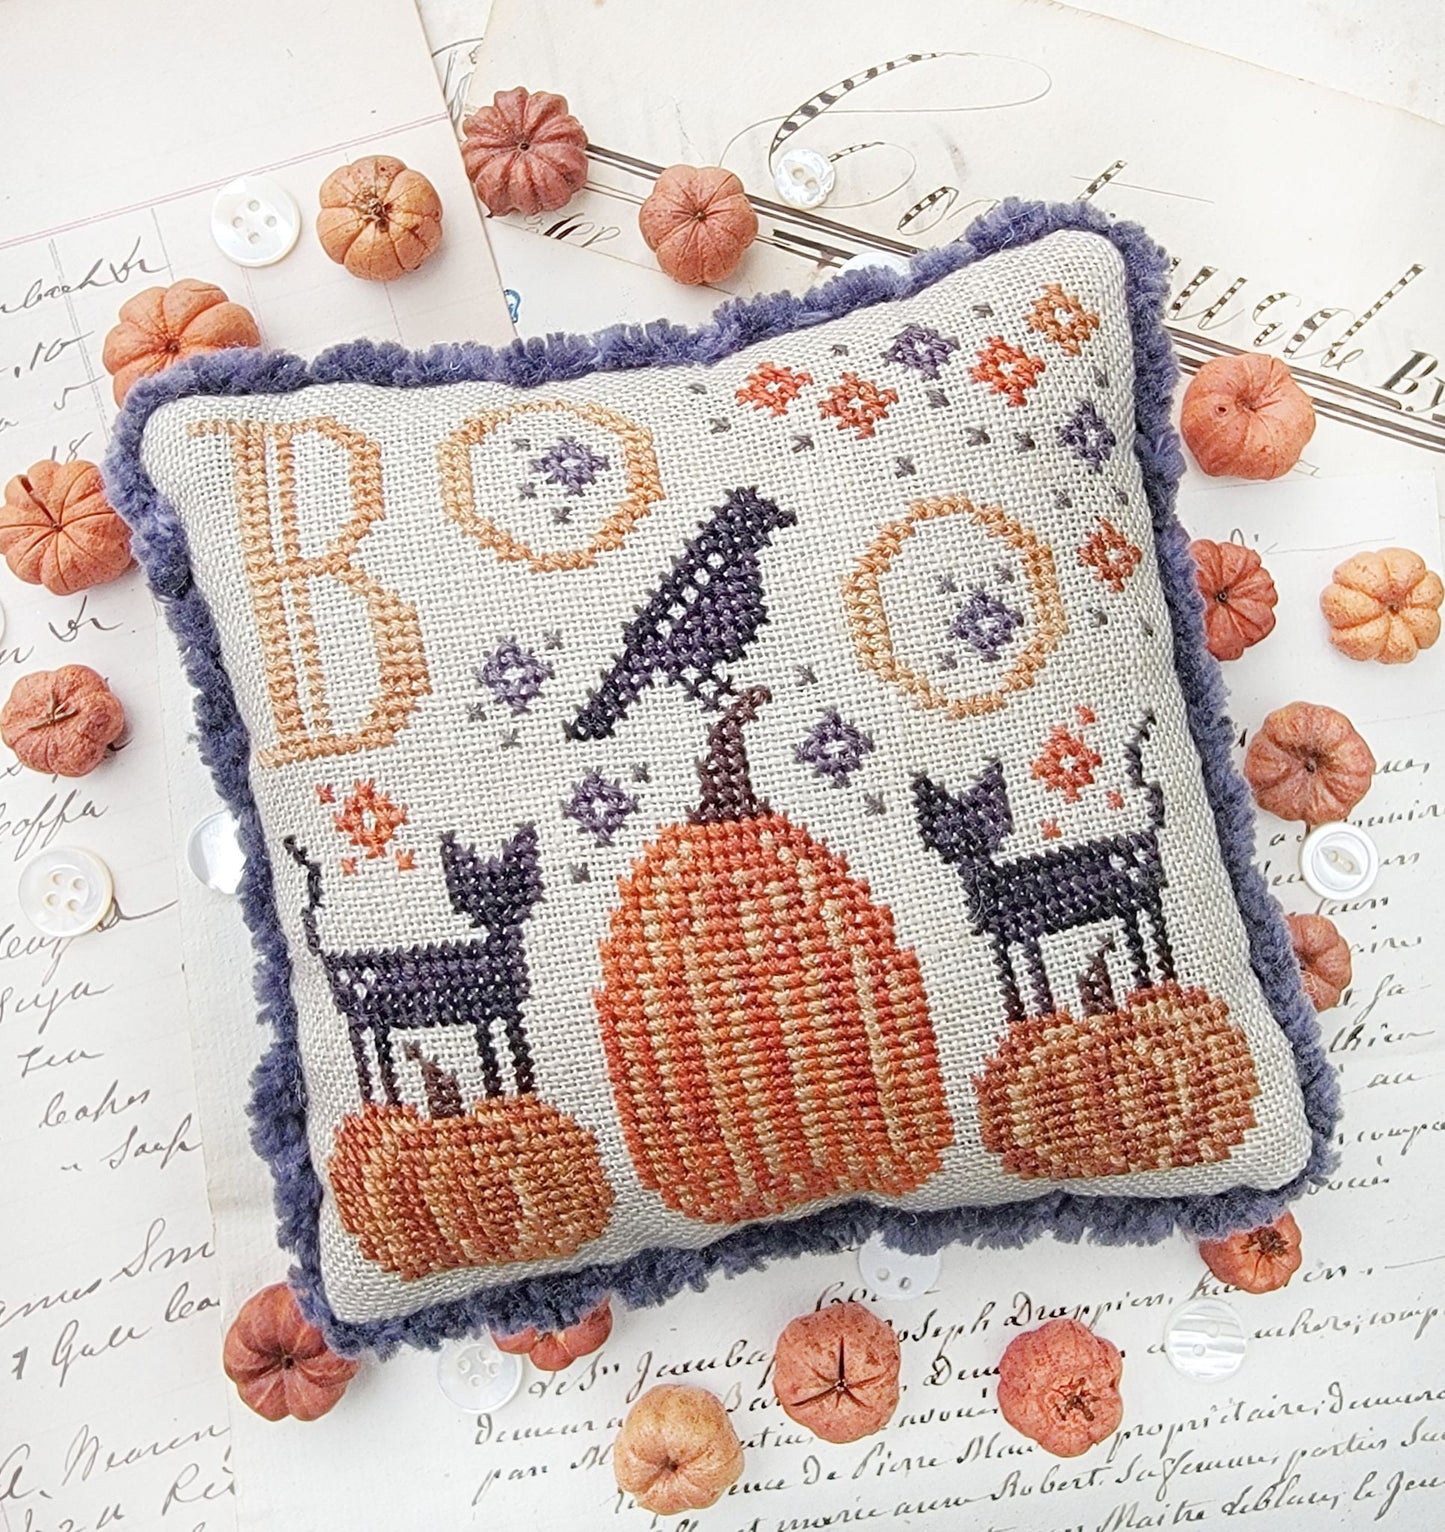 Boo - Cross Stitch Pattern by Hello from Liz Mathews